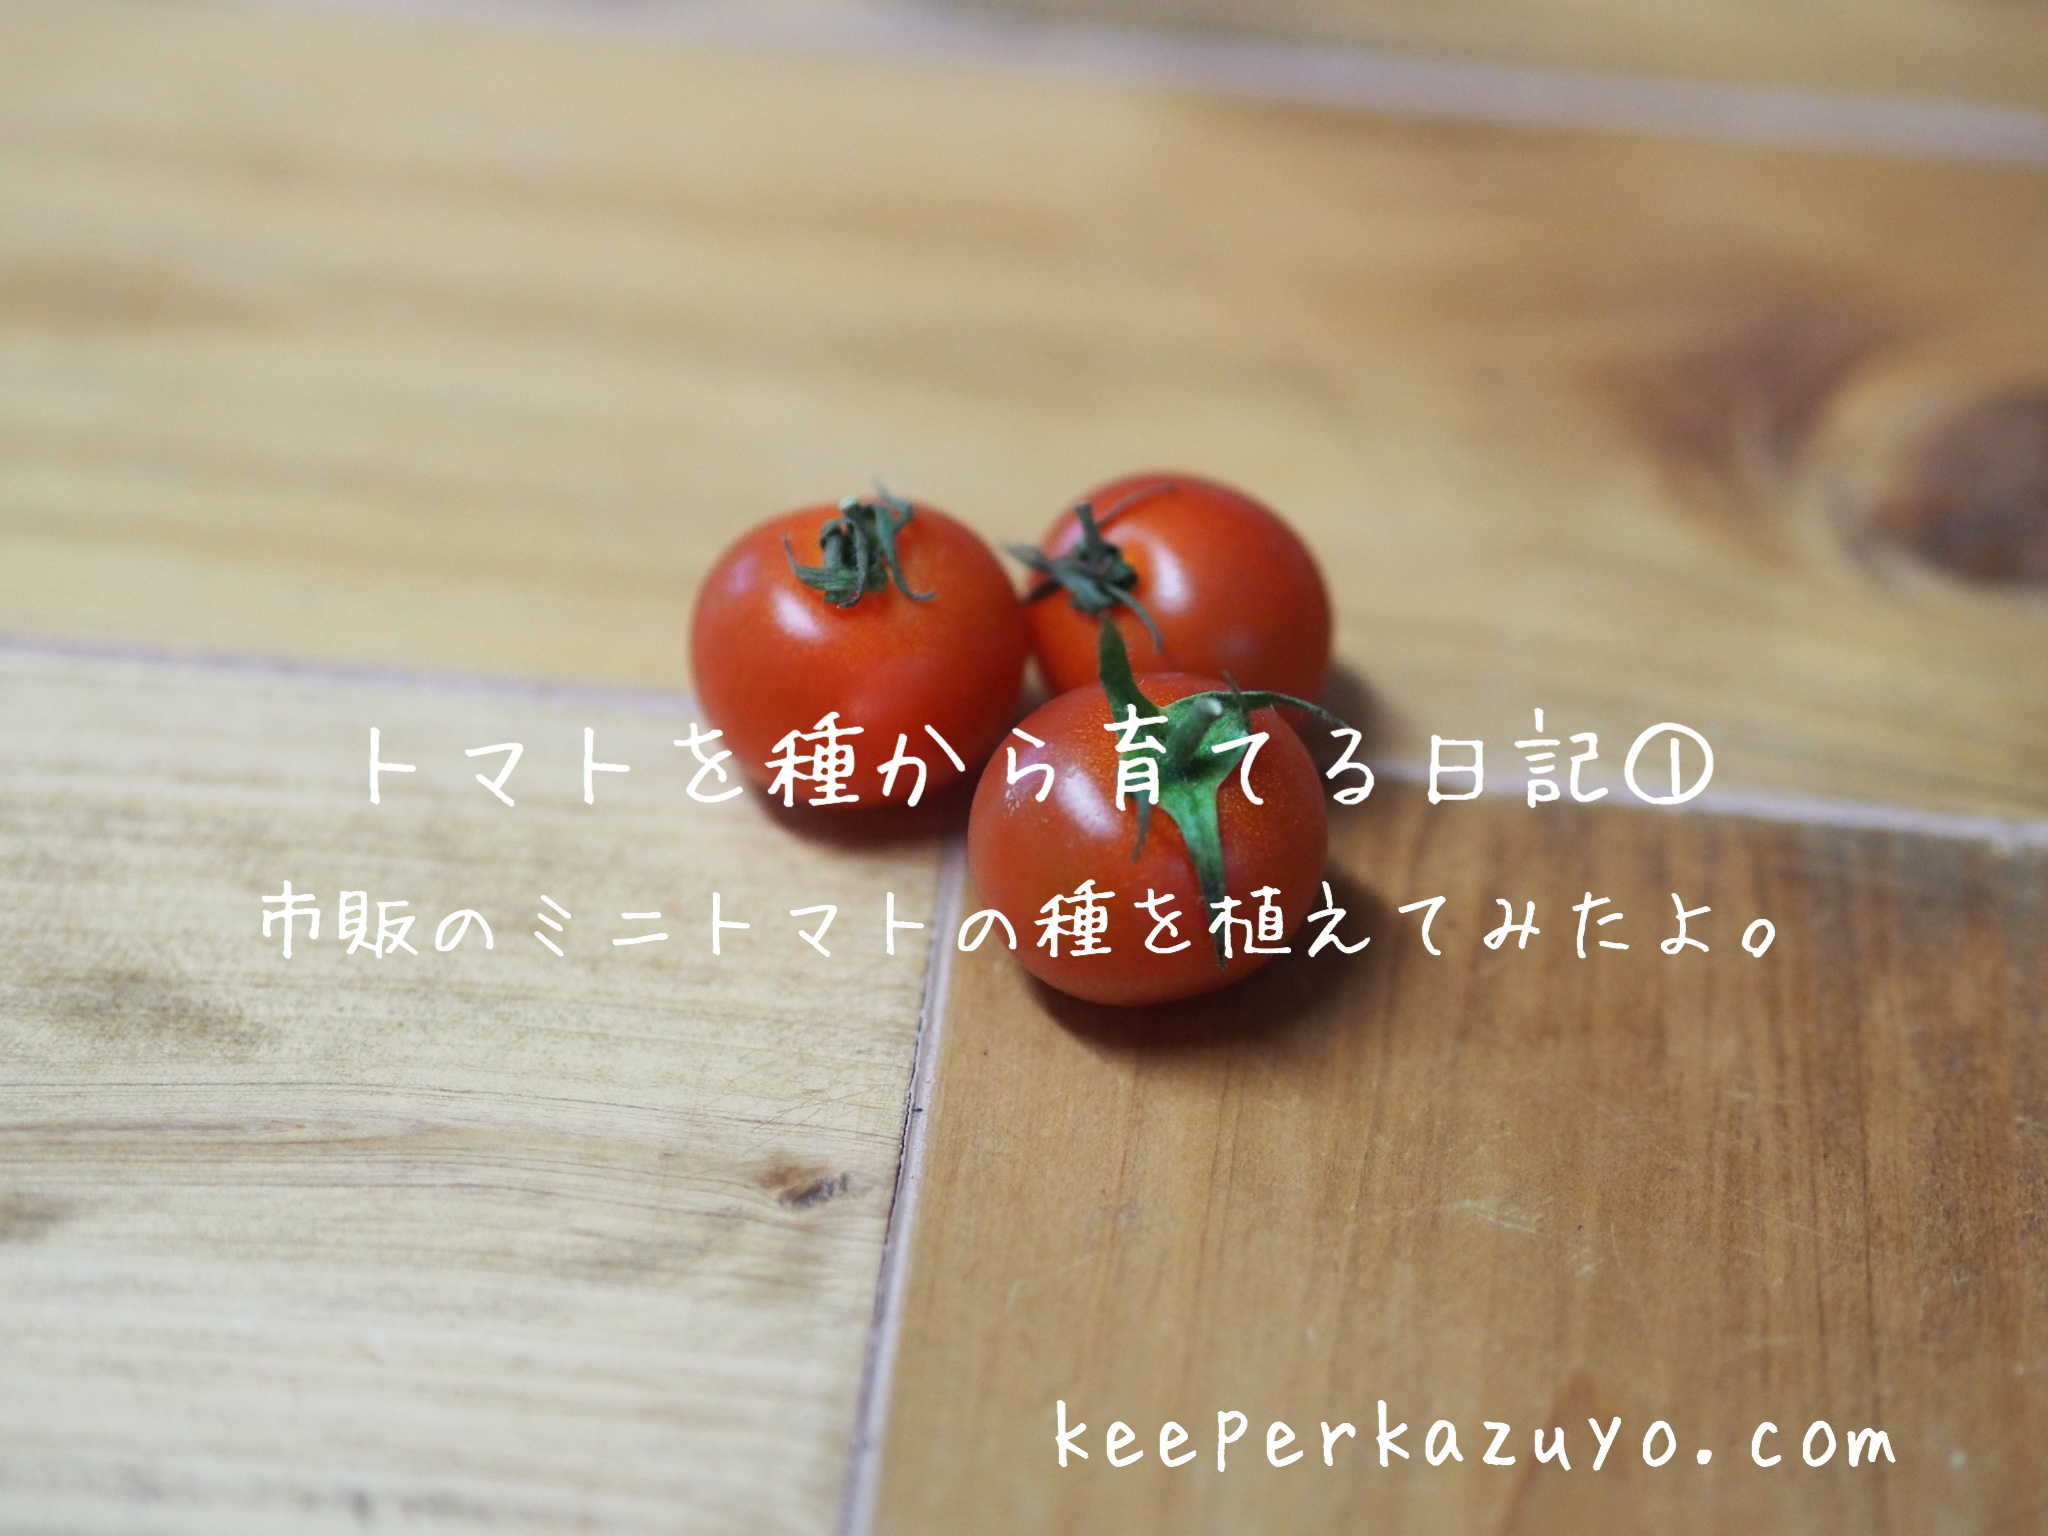 トマトを種から育てる日記 市販のトマトから種を採取して植えてみたよ 私の人生の彩り方